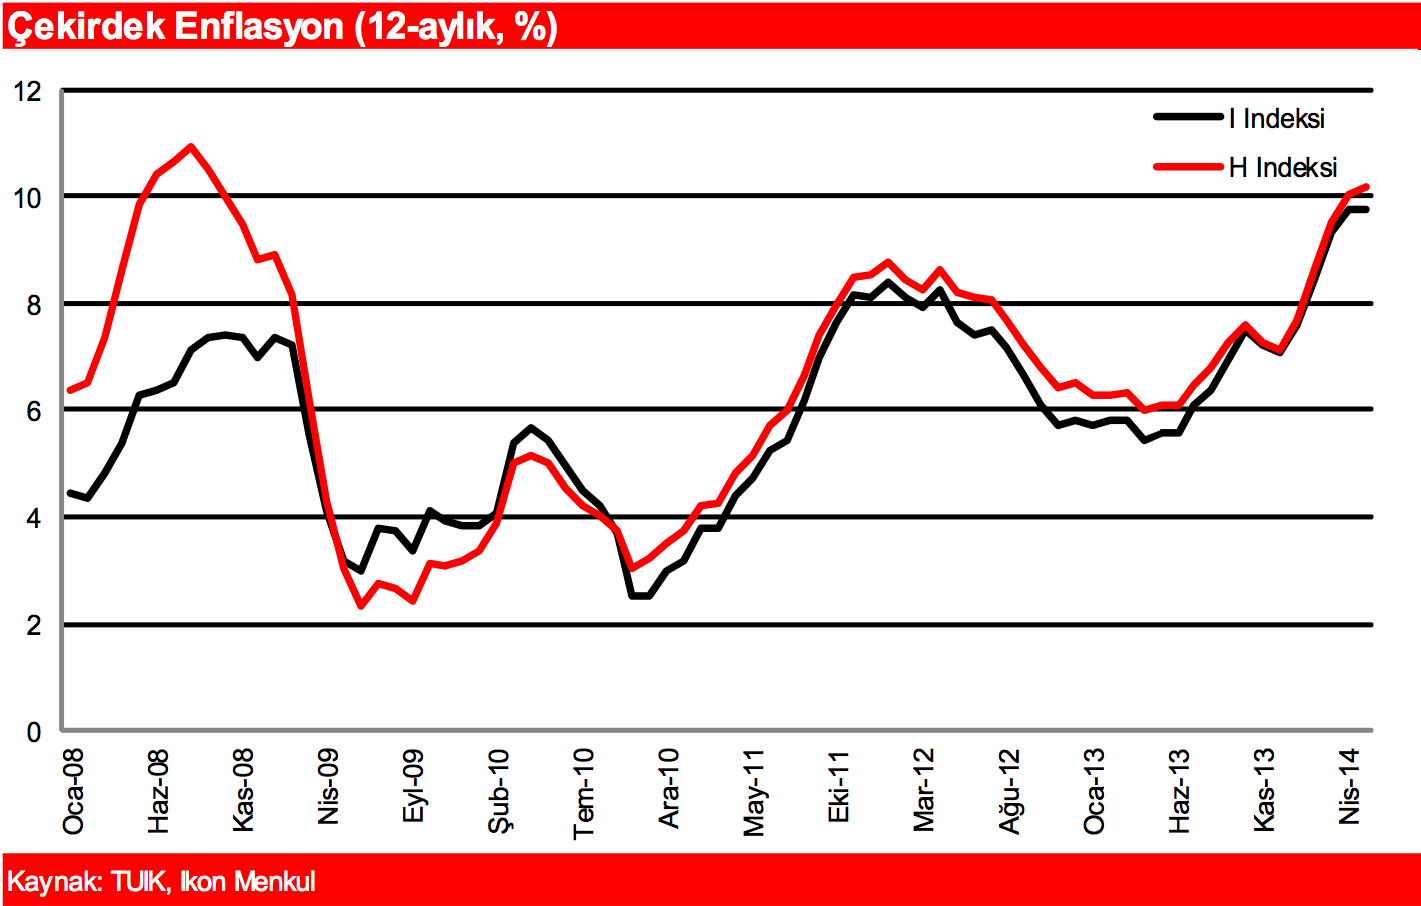 ENFLASYON 2013 yılını %7,4 seviyesinde bitiren TÜFE enflasyonu Mayıs ayında tepe yaparak %9,7 ye yükseldi. Çekirdek enflasyon özellikle kur geçişkenliği kaynaklı olarak yükselişini sürdürdü.